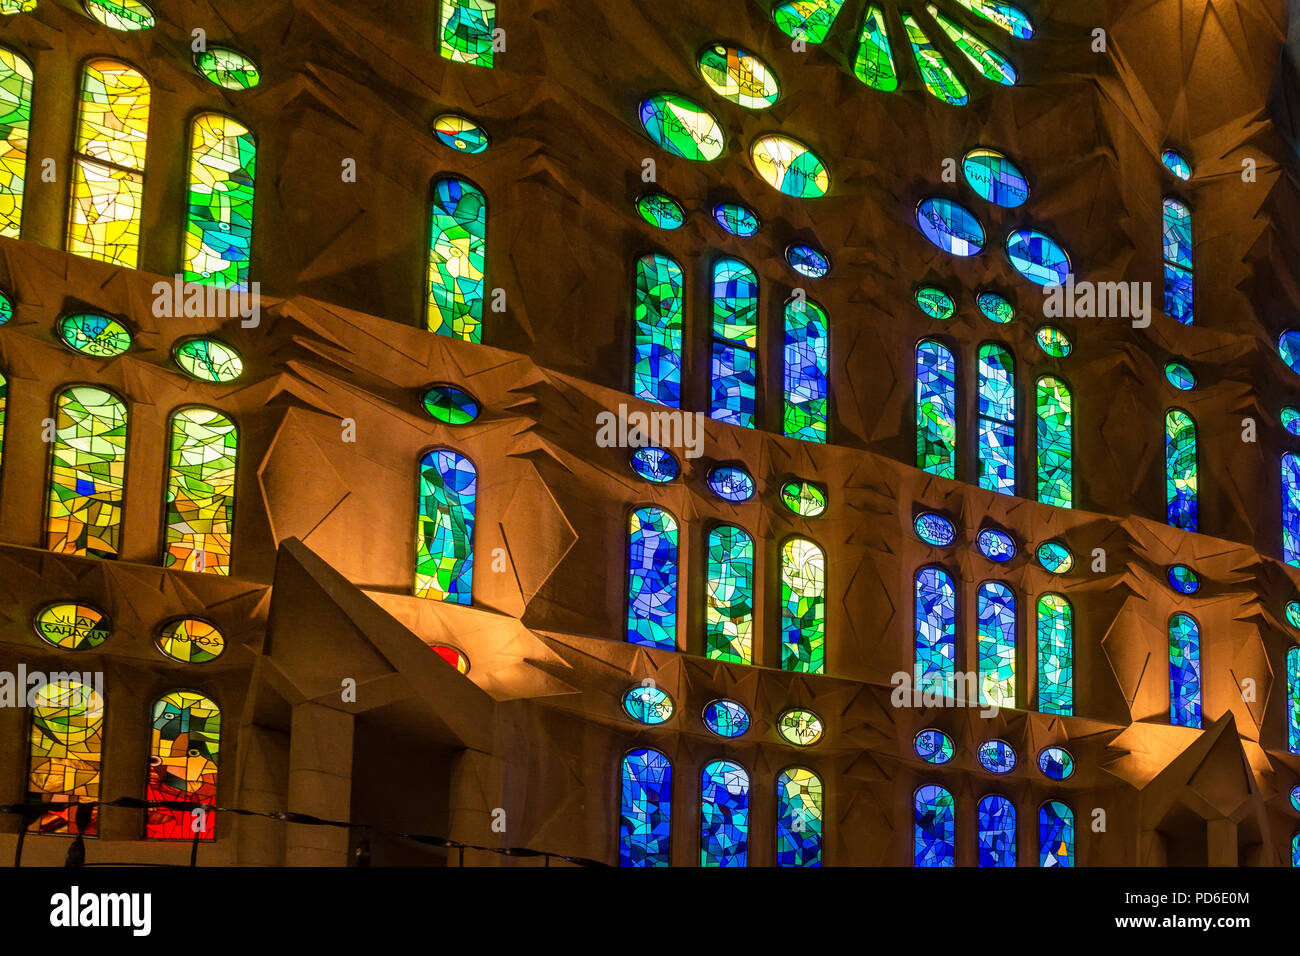 Bunte Glasfenster der Kathedrale Sagrada Familia - große unvollendete  Römisch-katholische Kirche in Barcelona, gestaltet von dem katalanischen  Architekten Antoni Gaudi Stockfotografie - Alamy